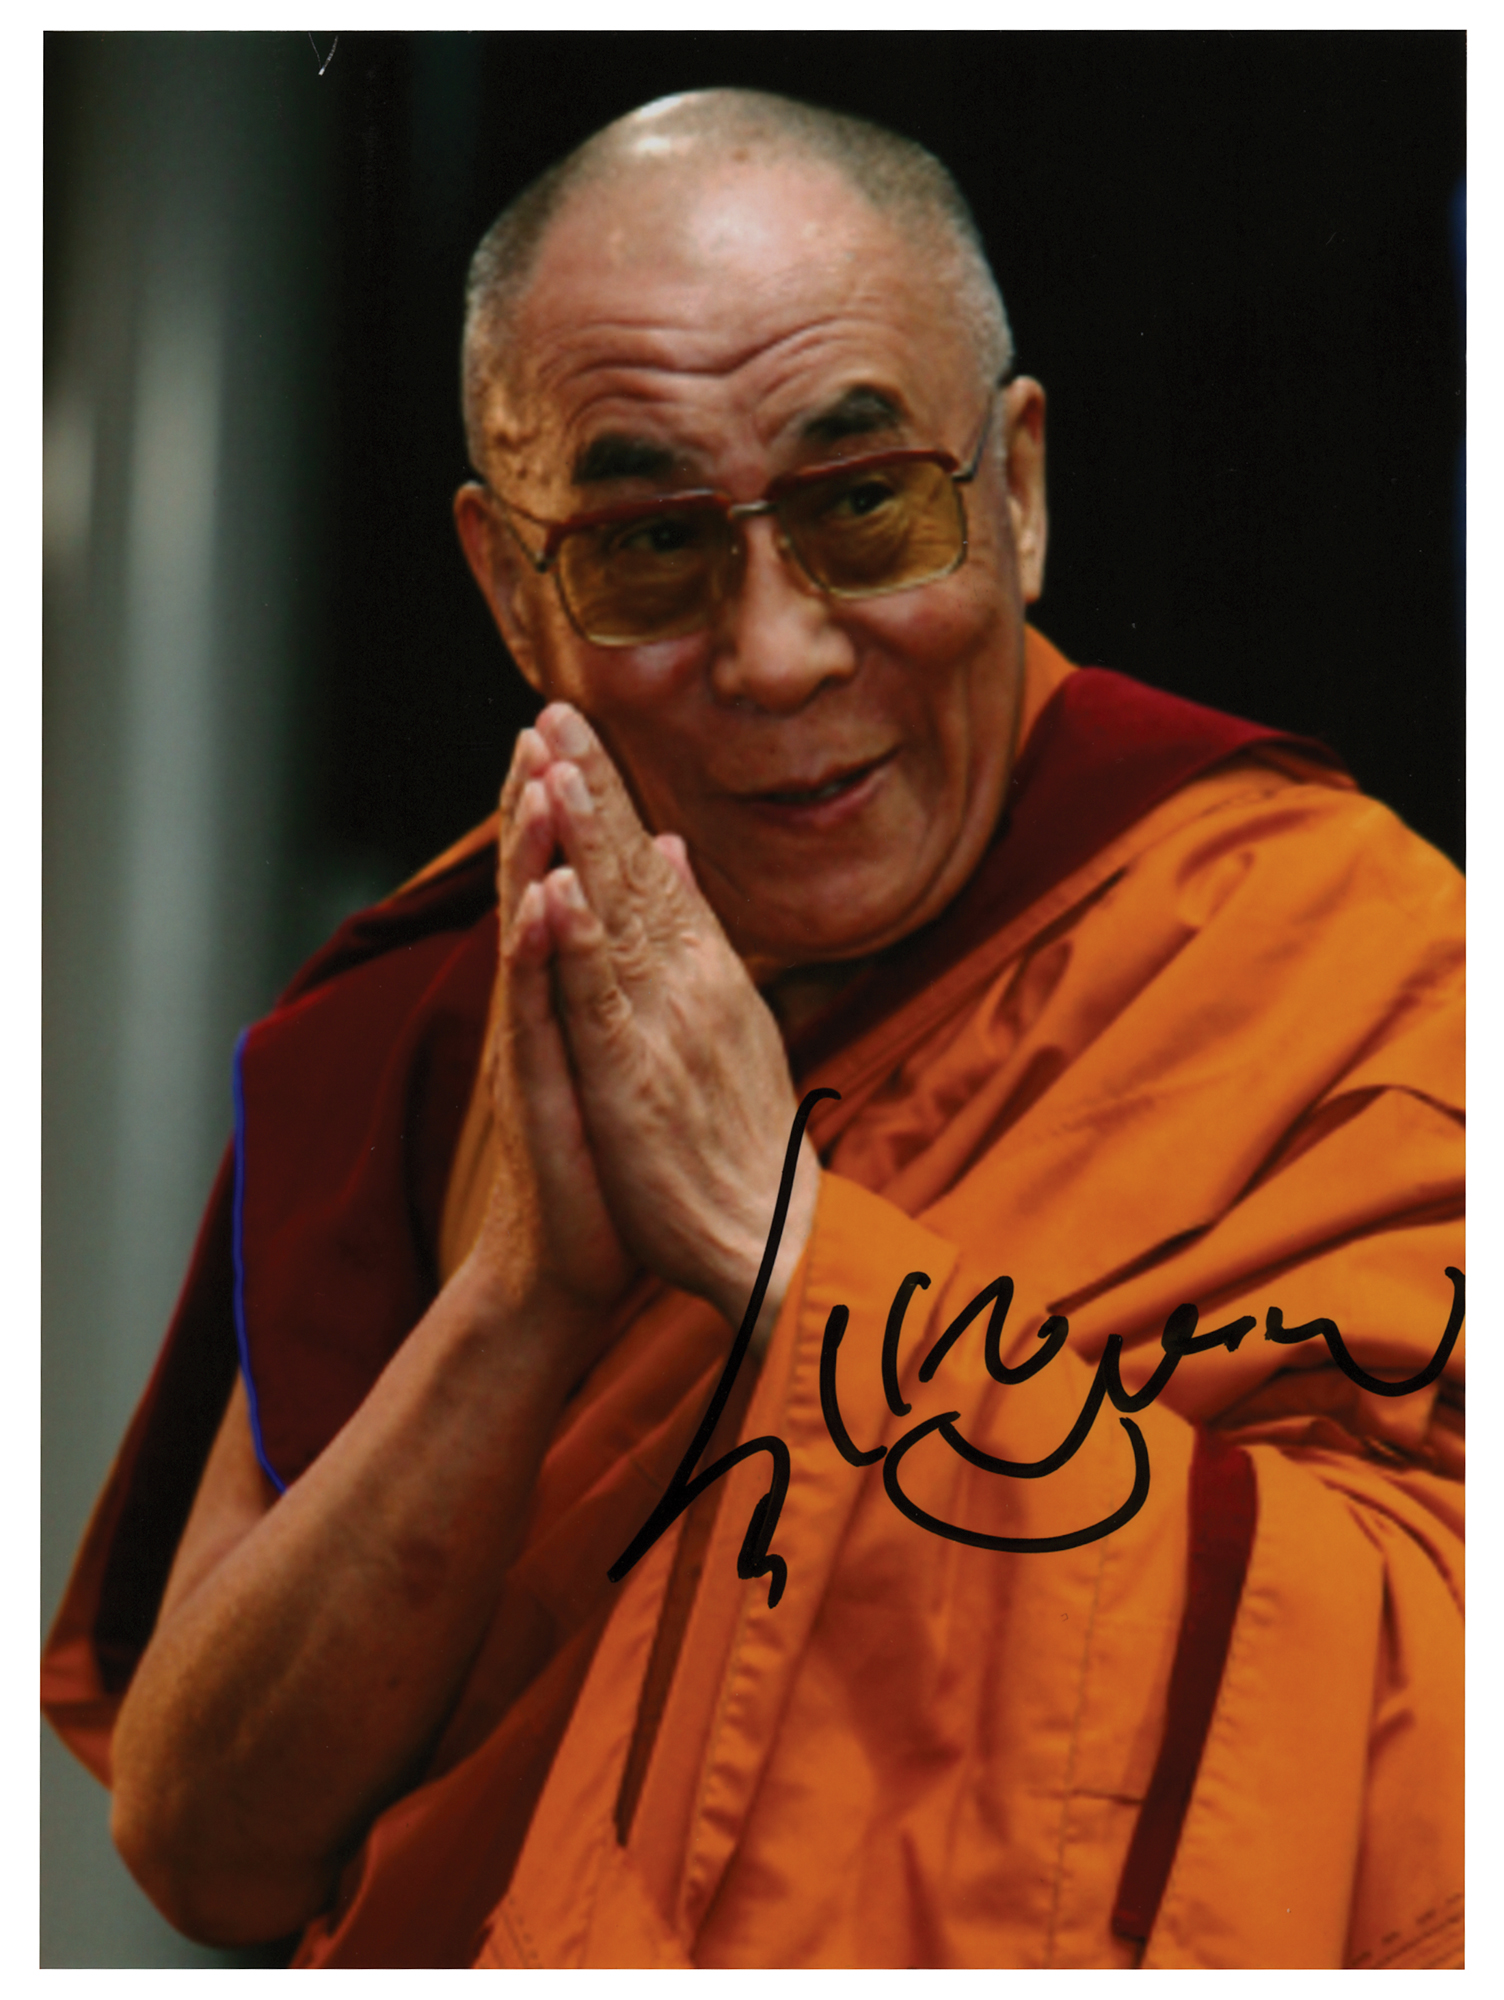 Lot #101 Dalai Lama Signed Photograph